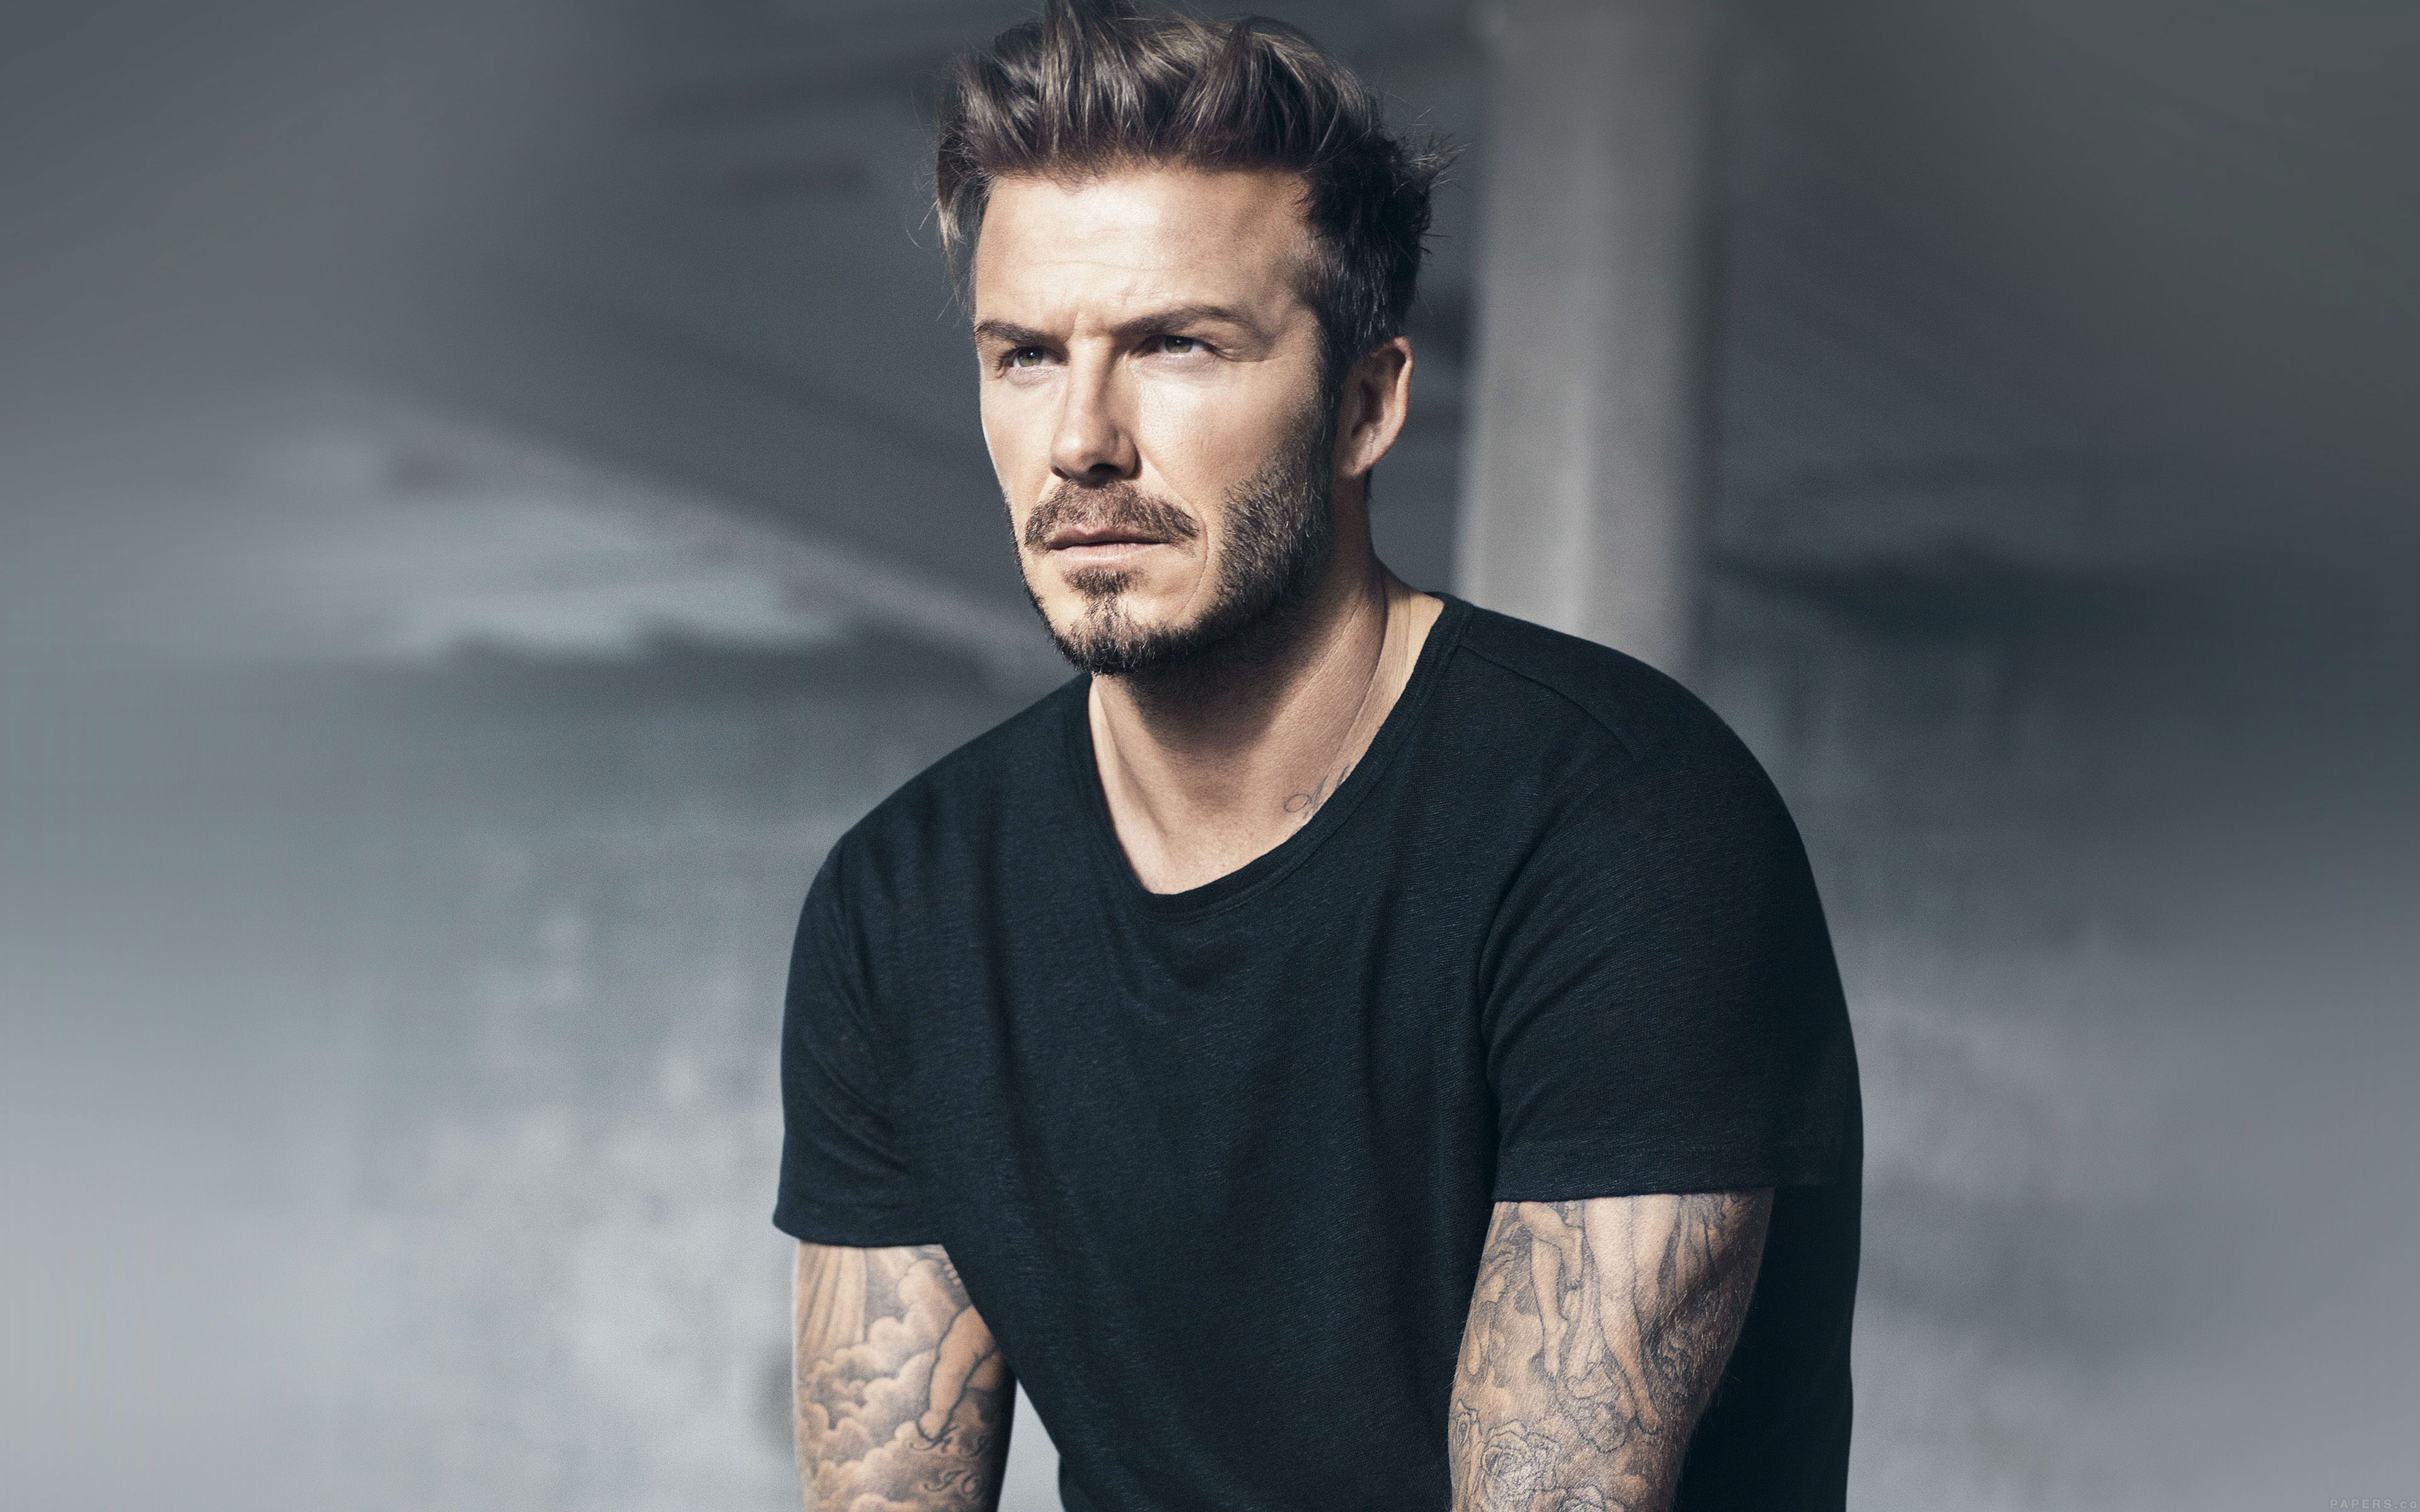 Download David Beckham Hd Wallpapers 2017 High Resolution Widescreen